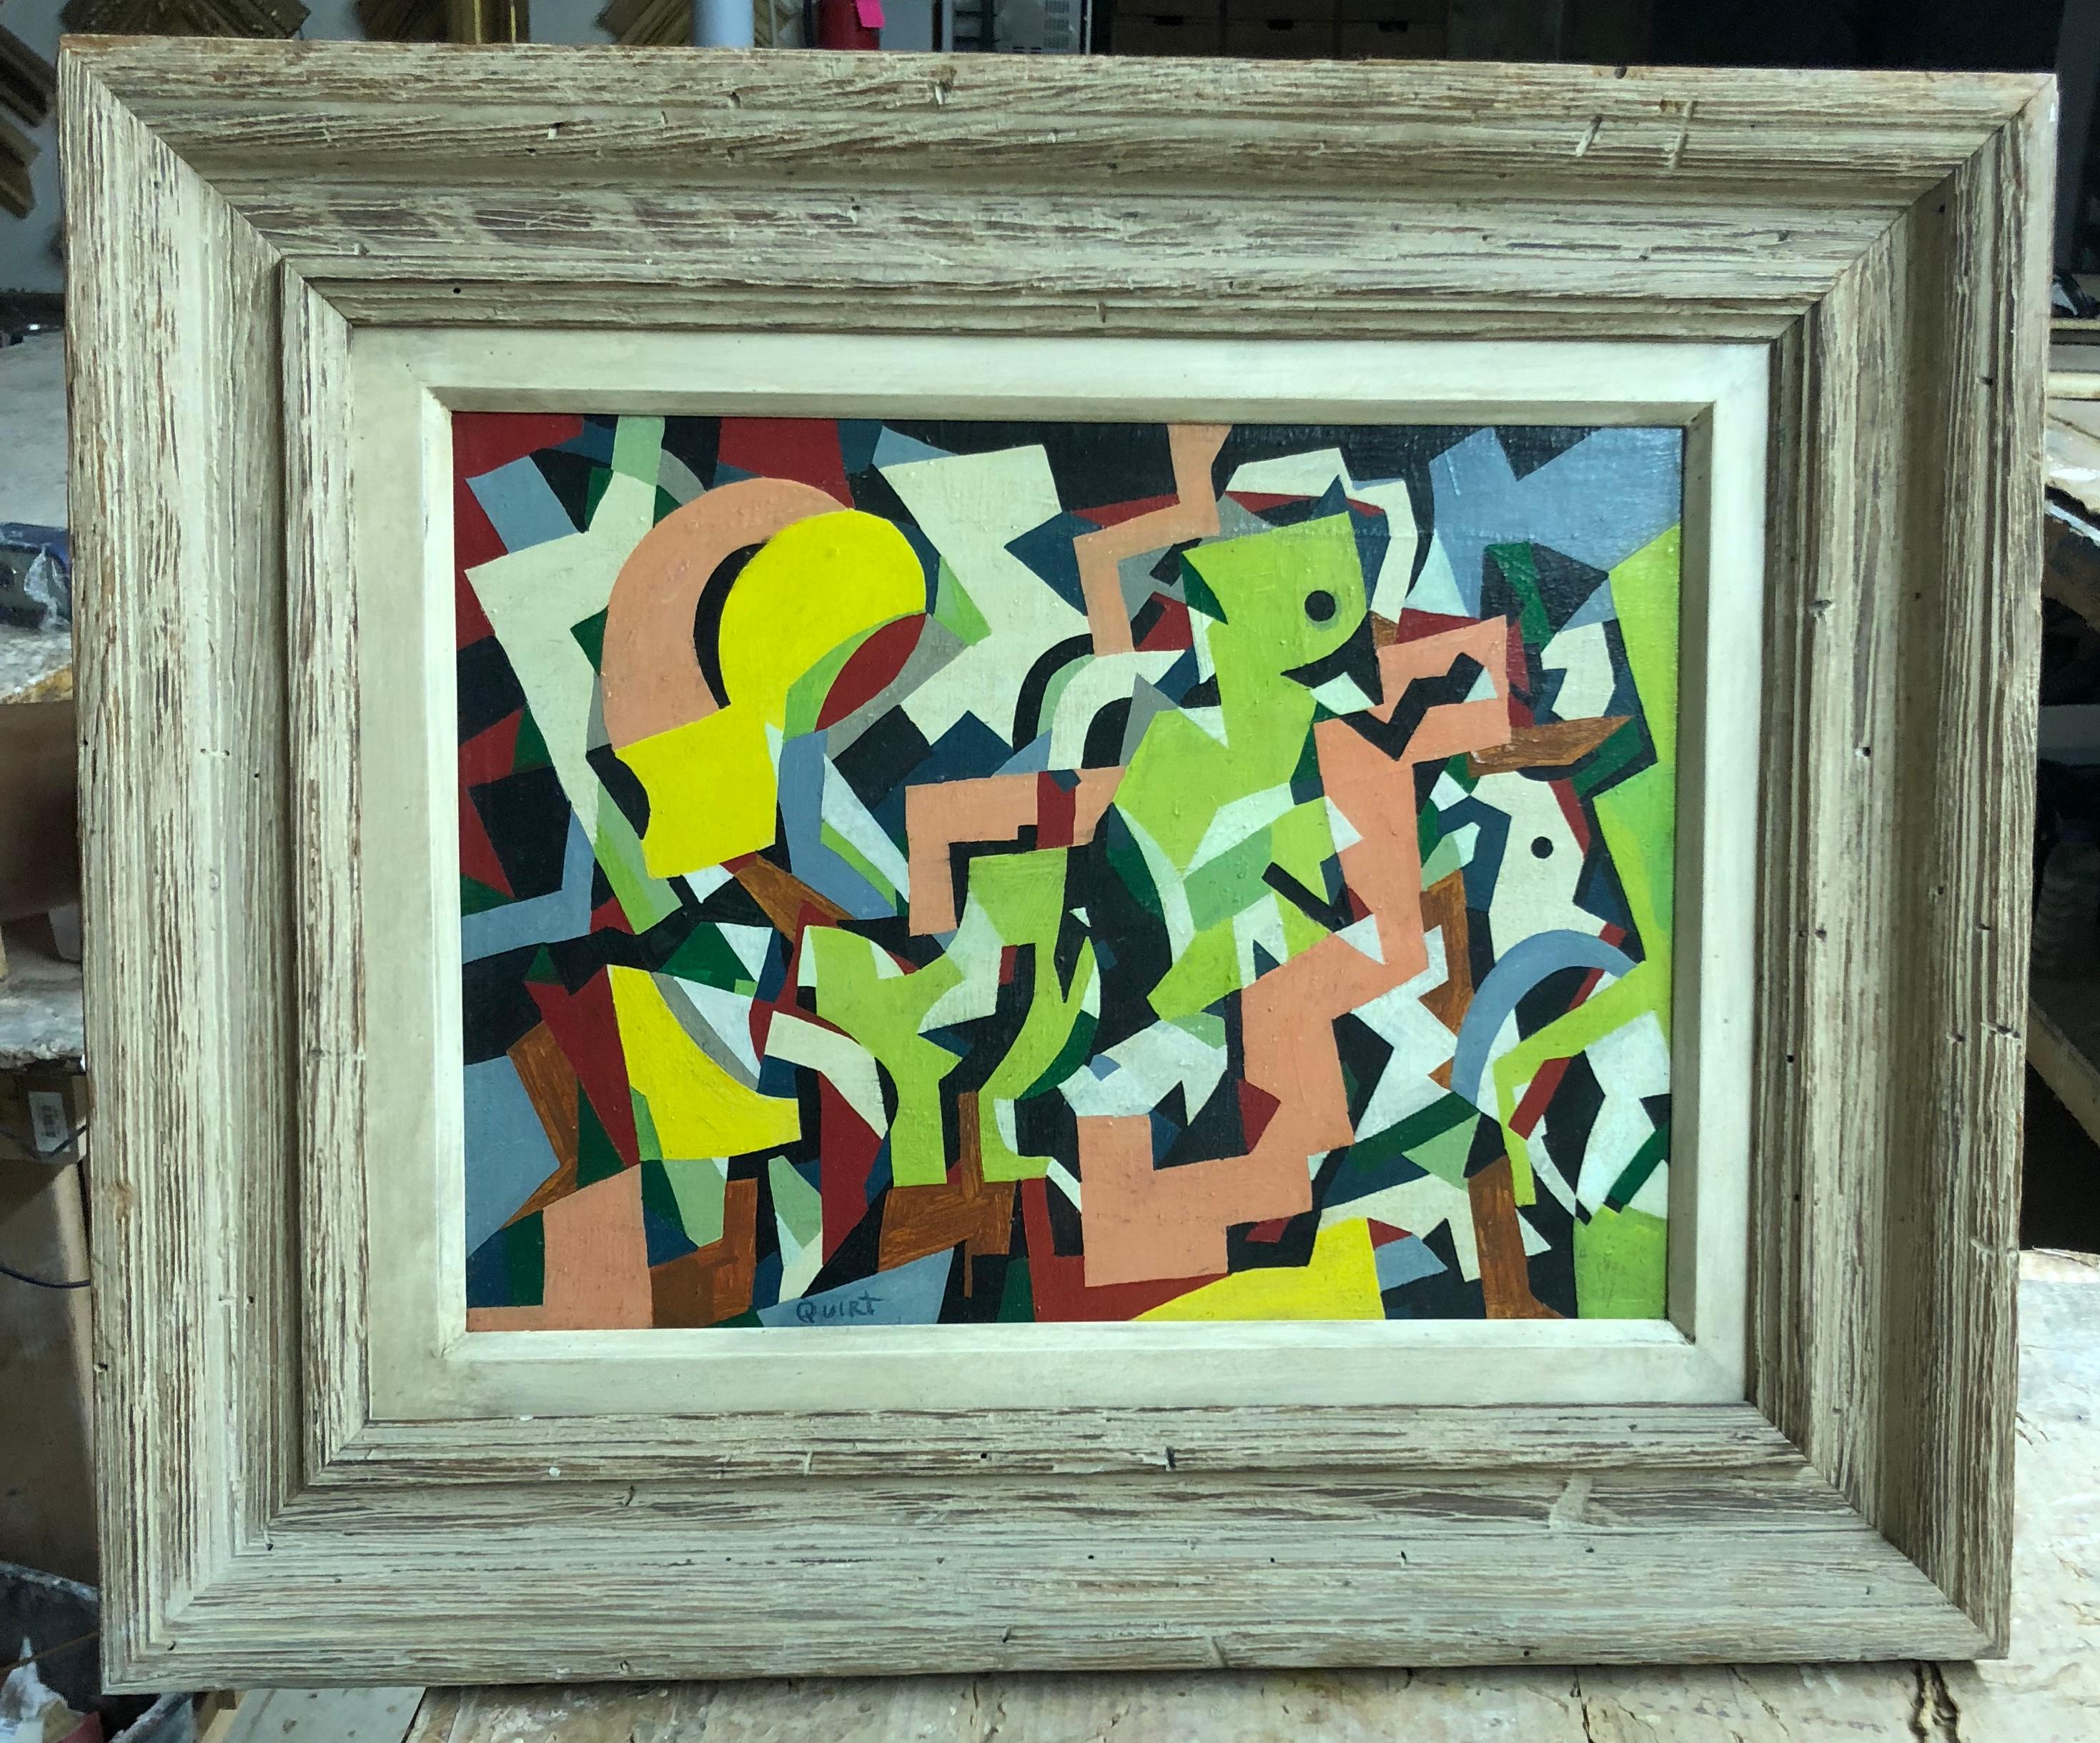 Der amerikanische Künstler Walter Quirt malte dieses modernistische, gegenstandslose, geometrische, abstrakte Ölfarbfeld während der WPA-Ära in den 1930er Jahren.

Abstraktion, 12 x 16 Zoll. Öl auf Leinwand. Signiert unten in der Mitte. Geschnitzter